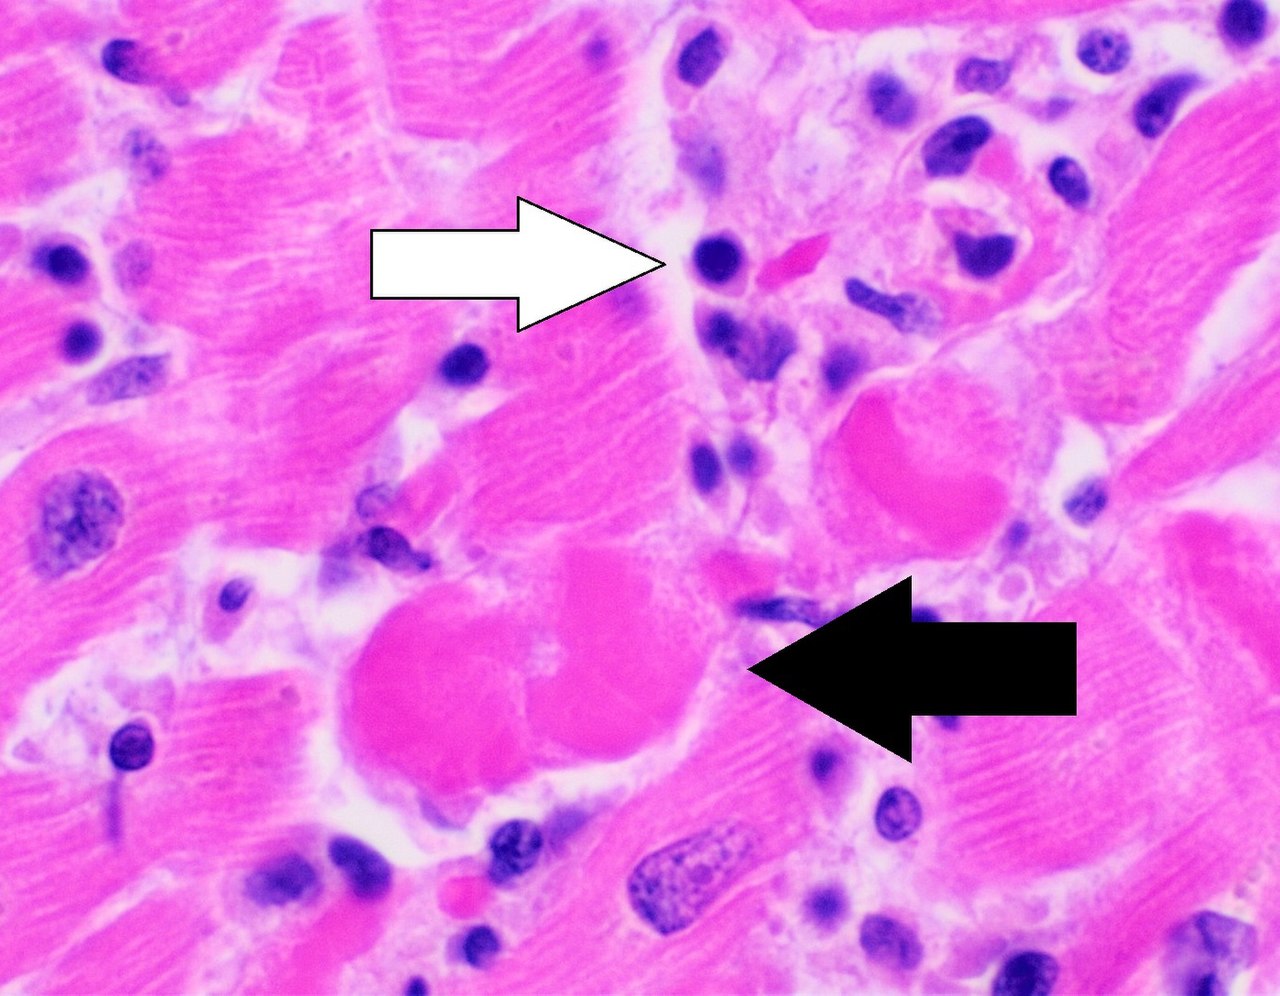 Arquivo:Histopatologia da miocardite linfocítica com miócitos